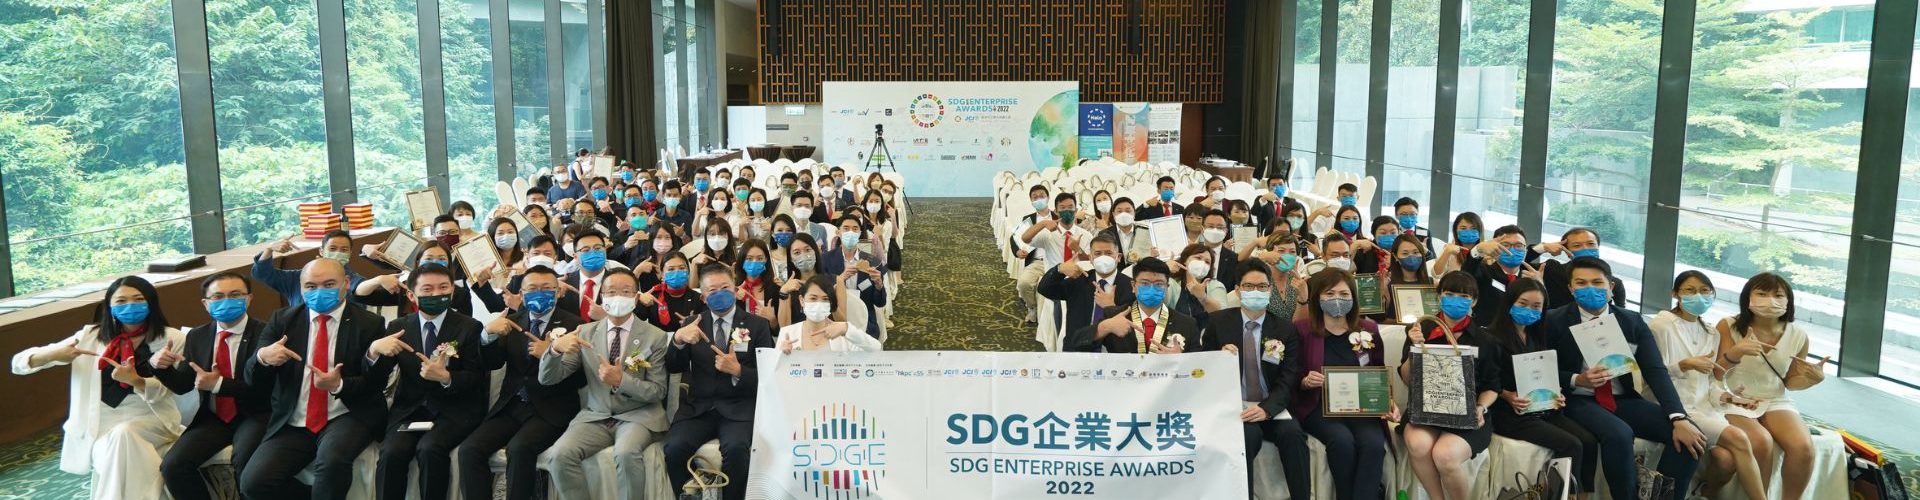 20 間傑出中小企榮獲「SDG 企業大獎」殊榮